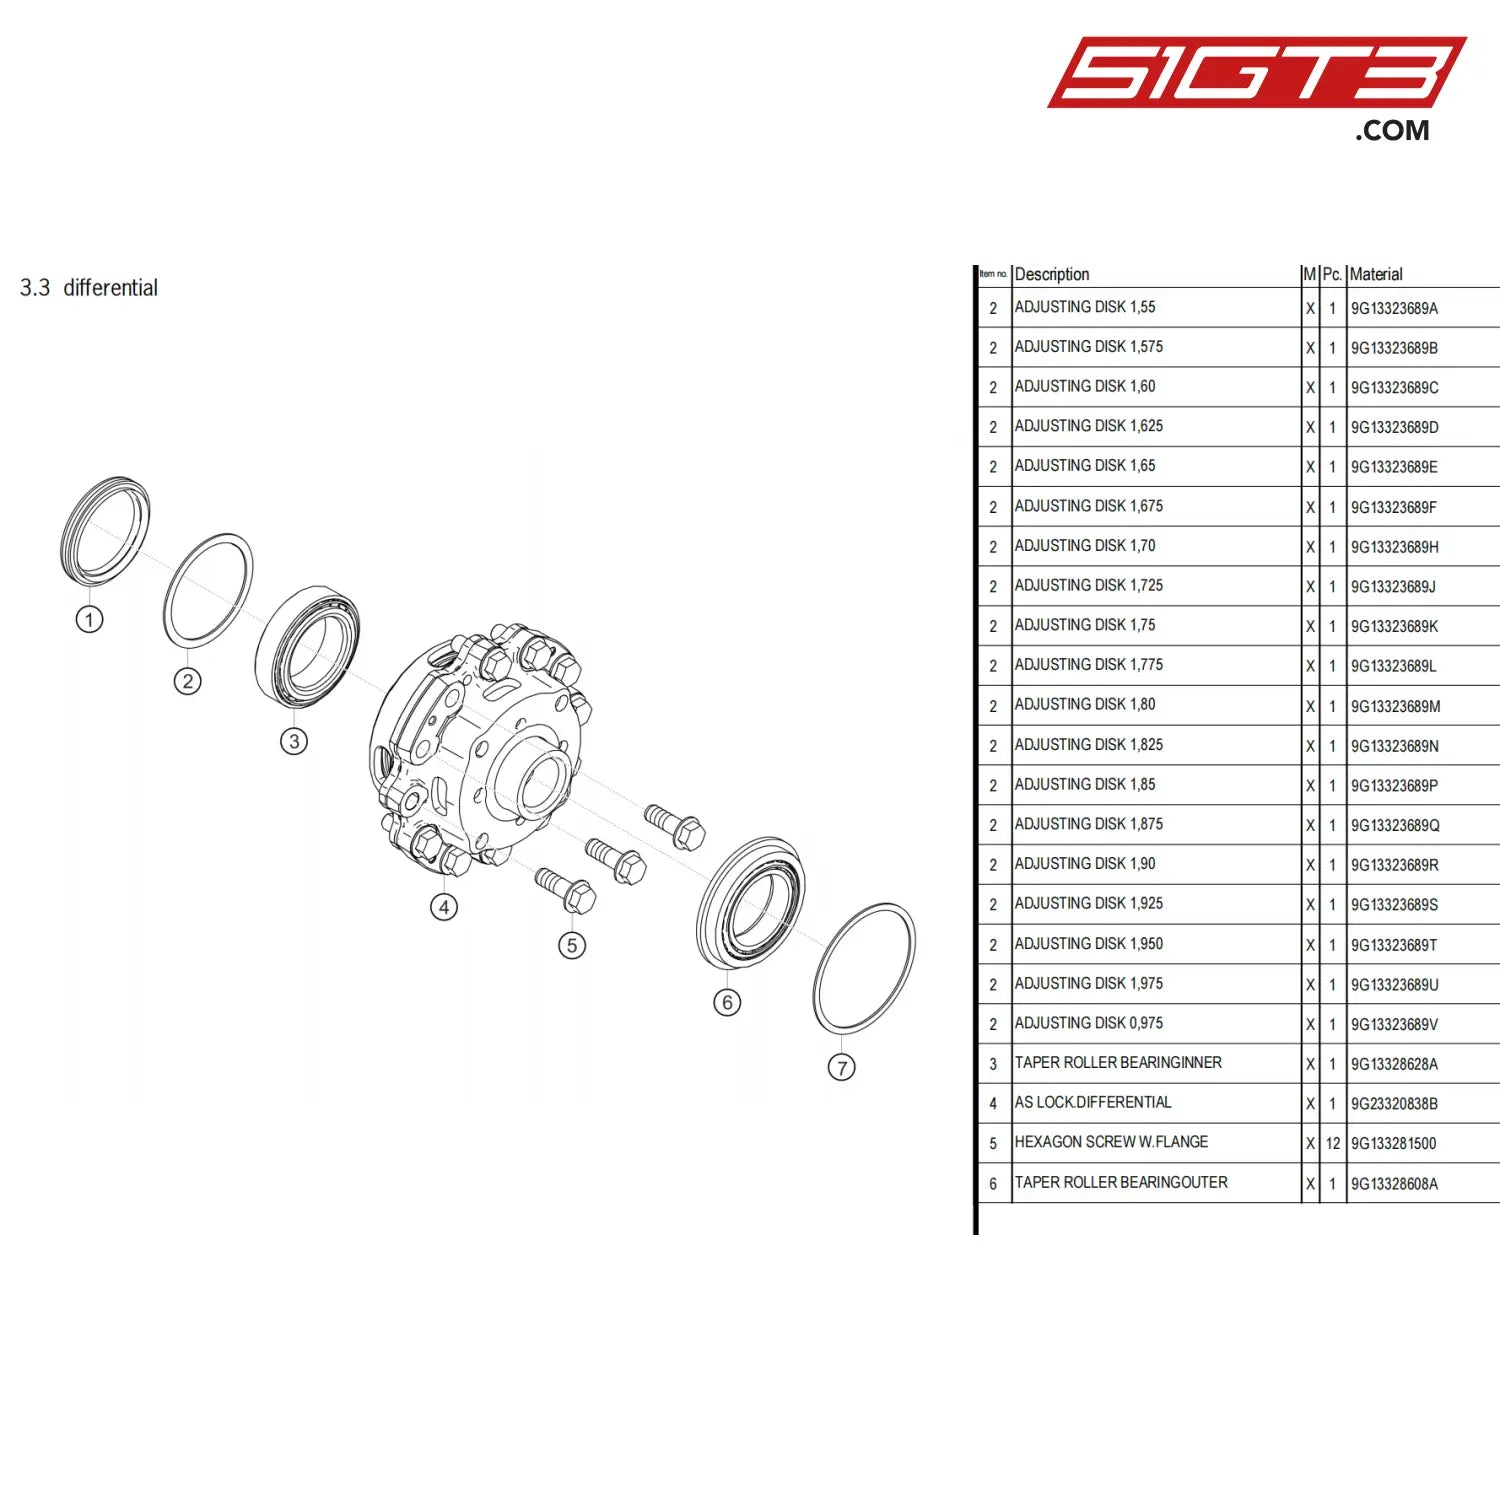 Adjusting Disk 1 625 - 9G13323668V [Porsche 718 Cayman Gt4 Clubsport] Differential